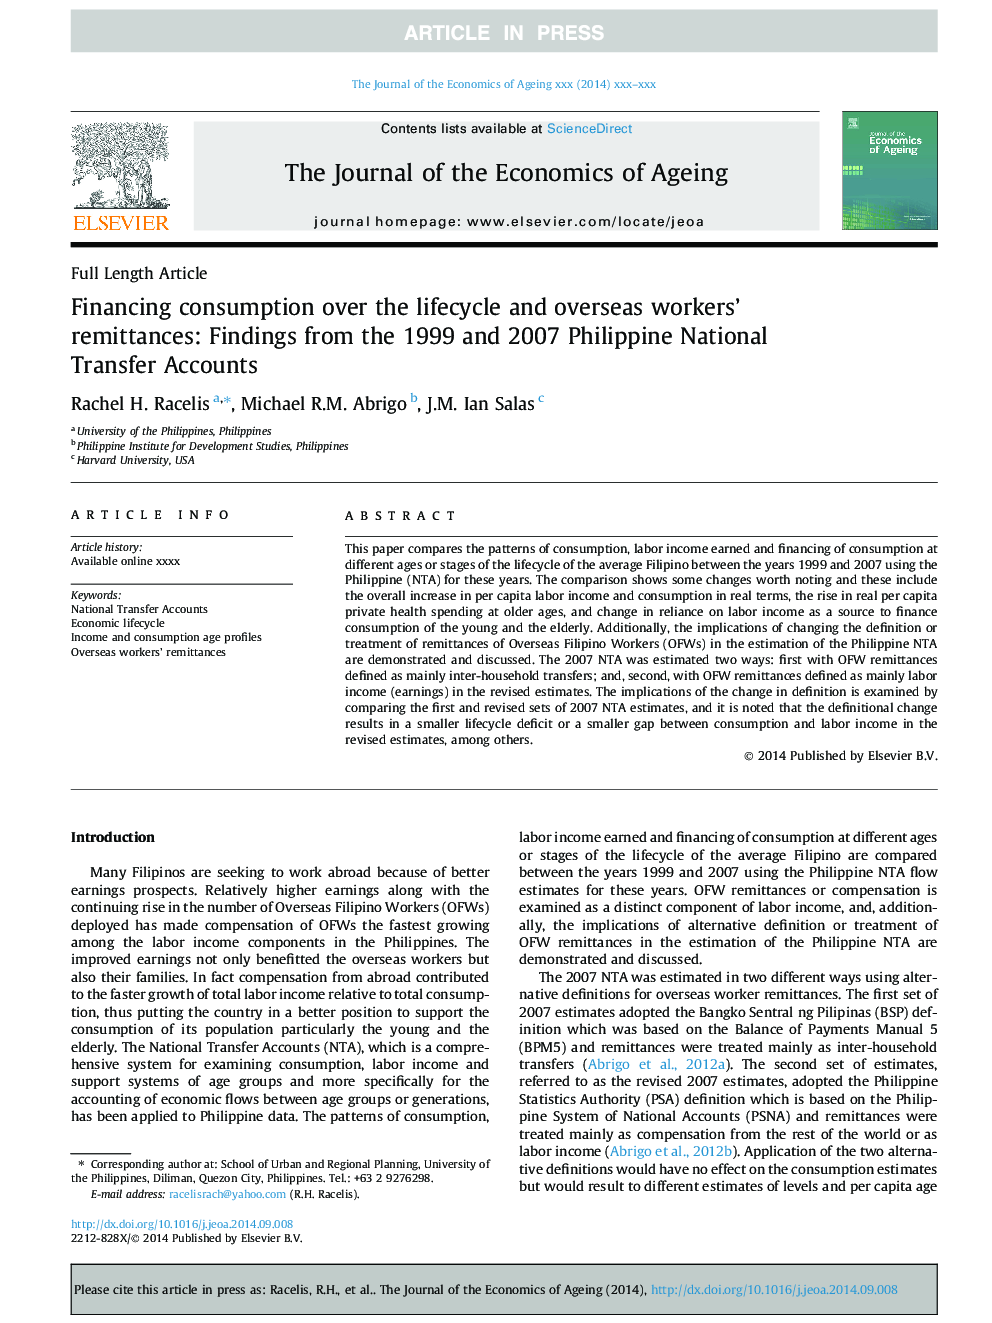 مصرف مالی در طول عمر و انتقال پول کارگران خارج از کشور: یافته های حساب های انتقال ملی فیلیپین 1999 و 2007 